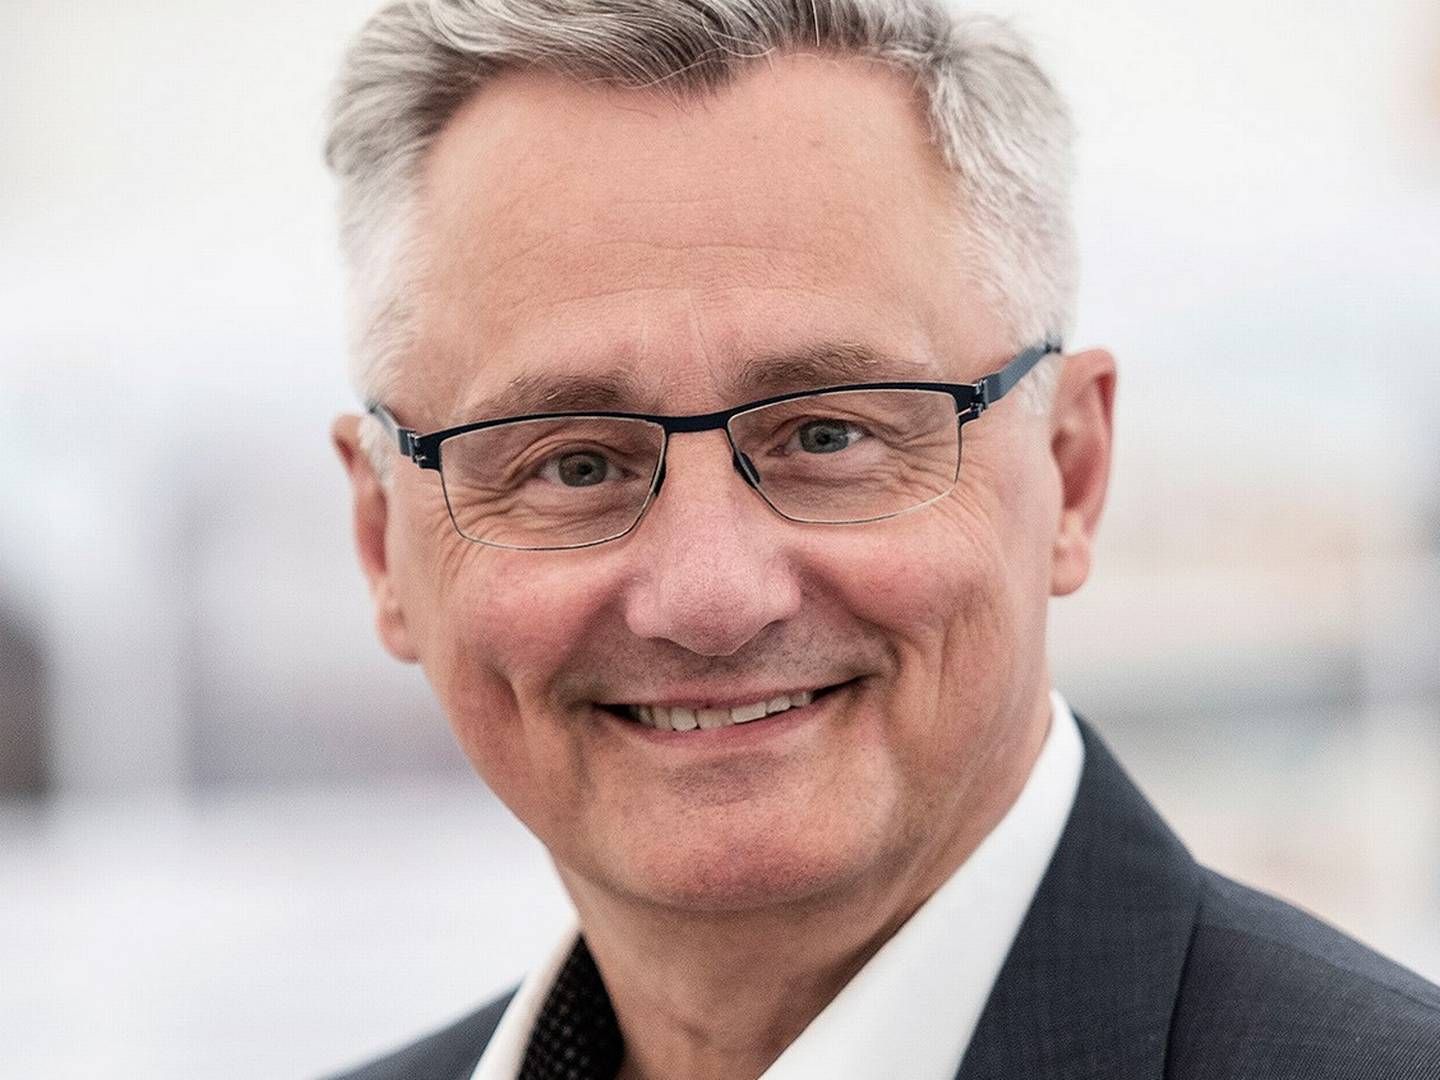 Torben Bjørk Nielsen har været topchef hos Hoffmann i mere end to årtier. | Foto: PR / Hoffmann